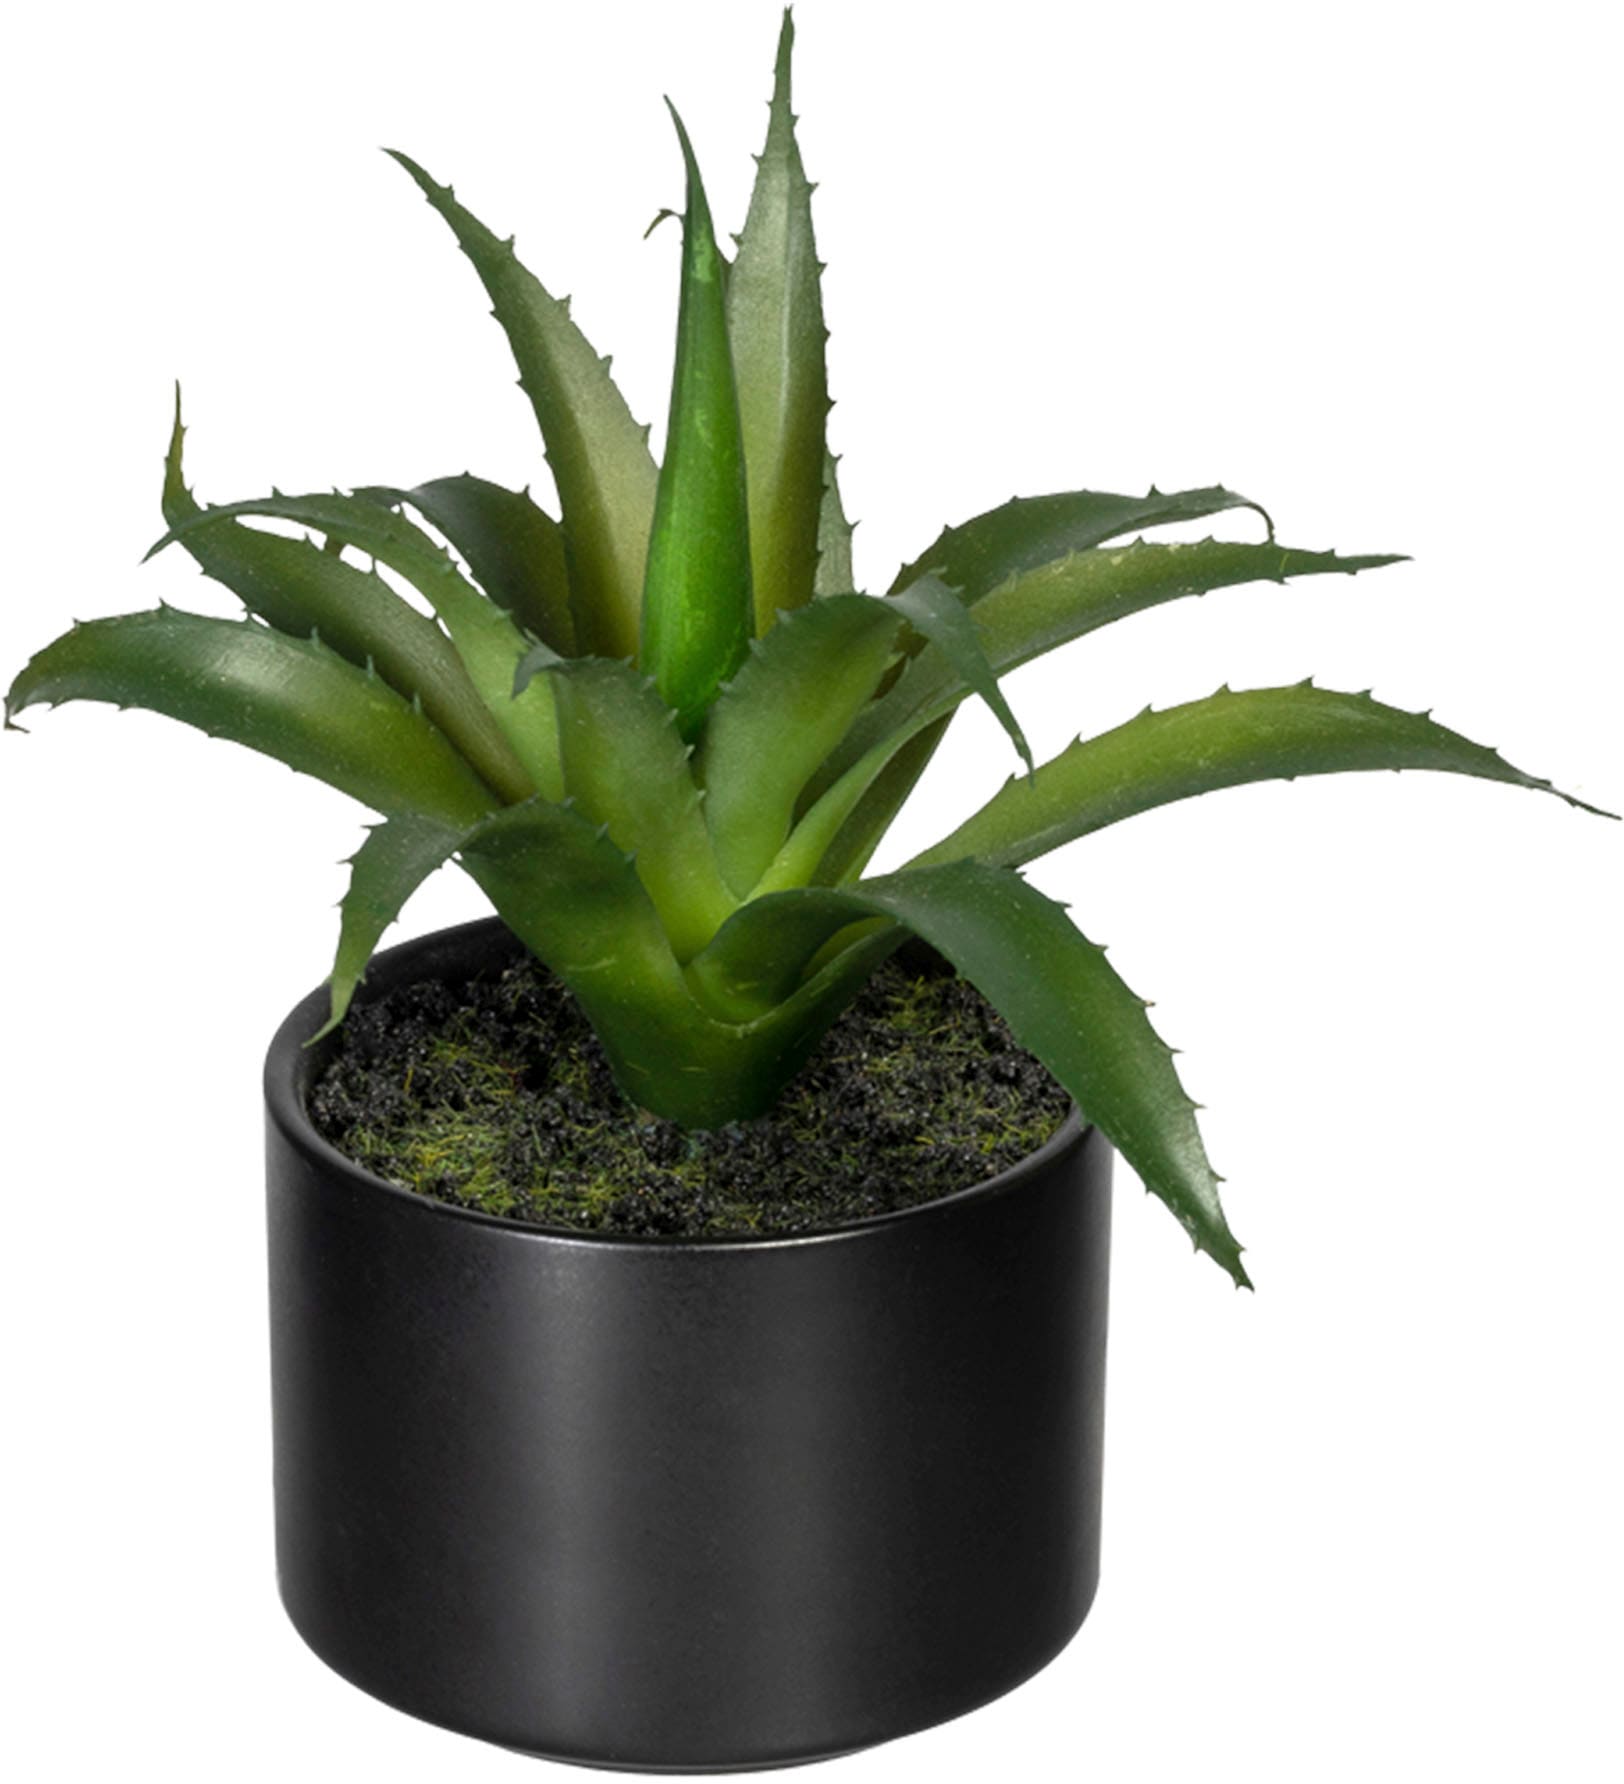 Creativ green Künstliche Zimmerpflanze »Set aus Aloe, Agave und Tillandsie«, im Keramiktopf, 3er Set